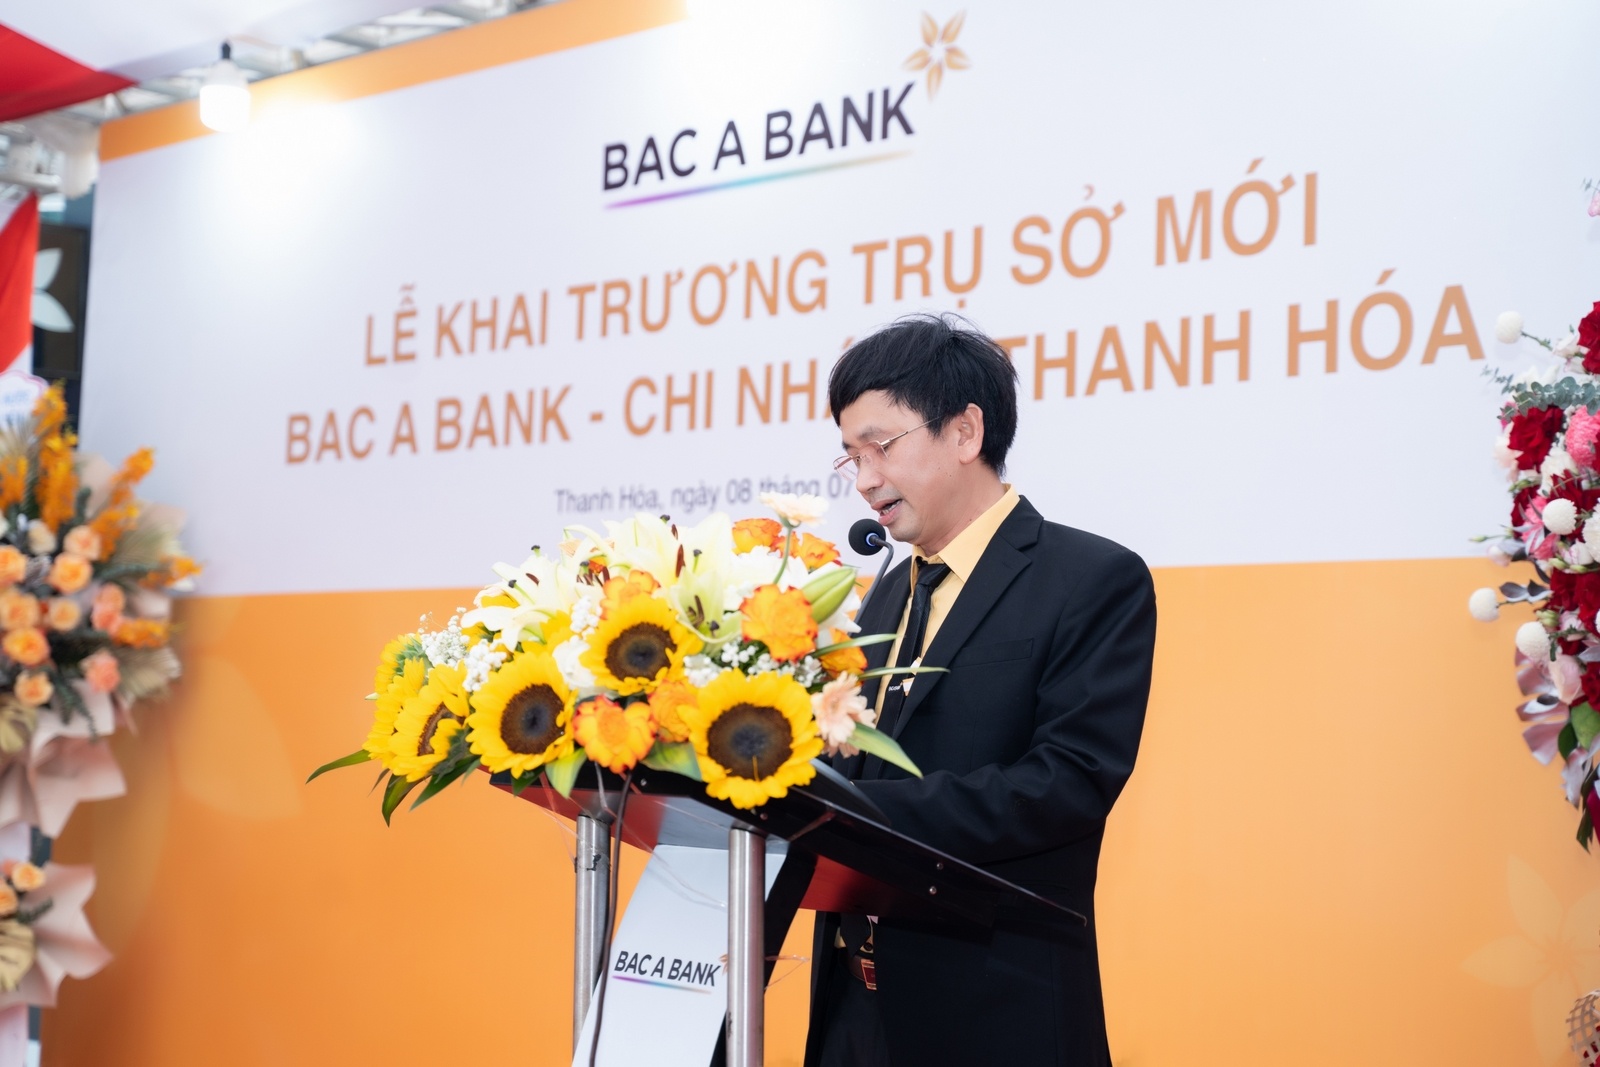 Ông Nguyễn Ái Dân, Phó Tổng Giám đốc BAC A BANK phát biểu tại lễ khai trương